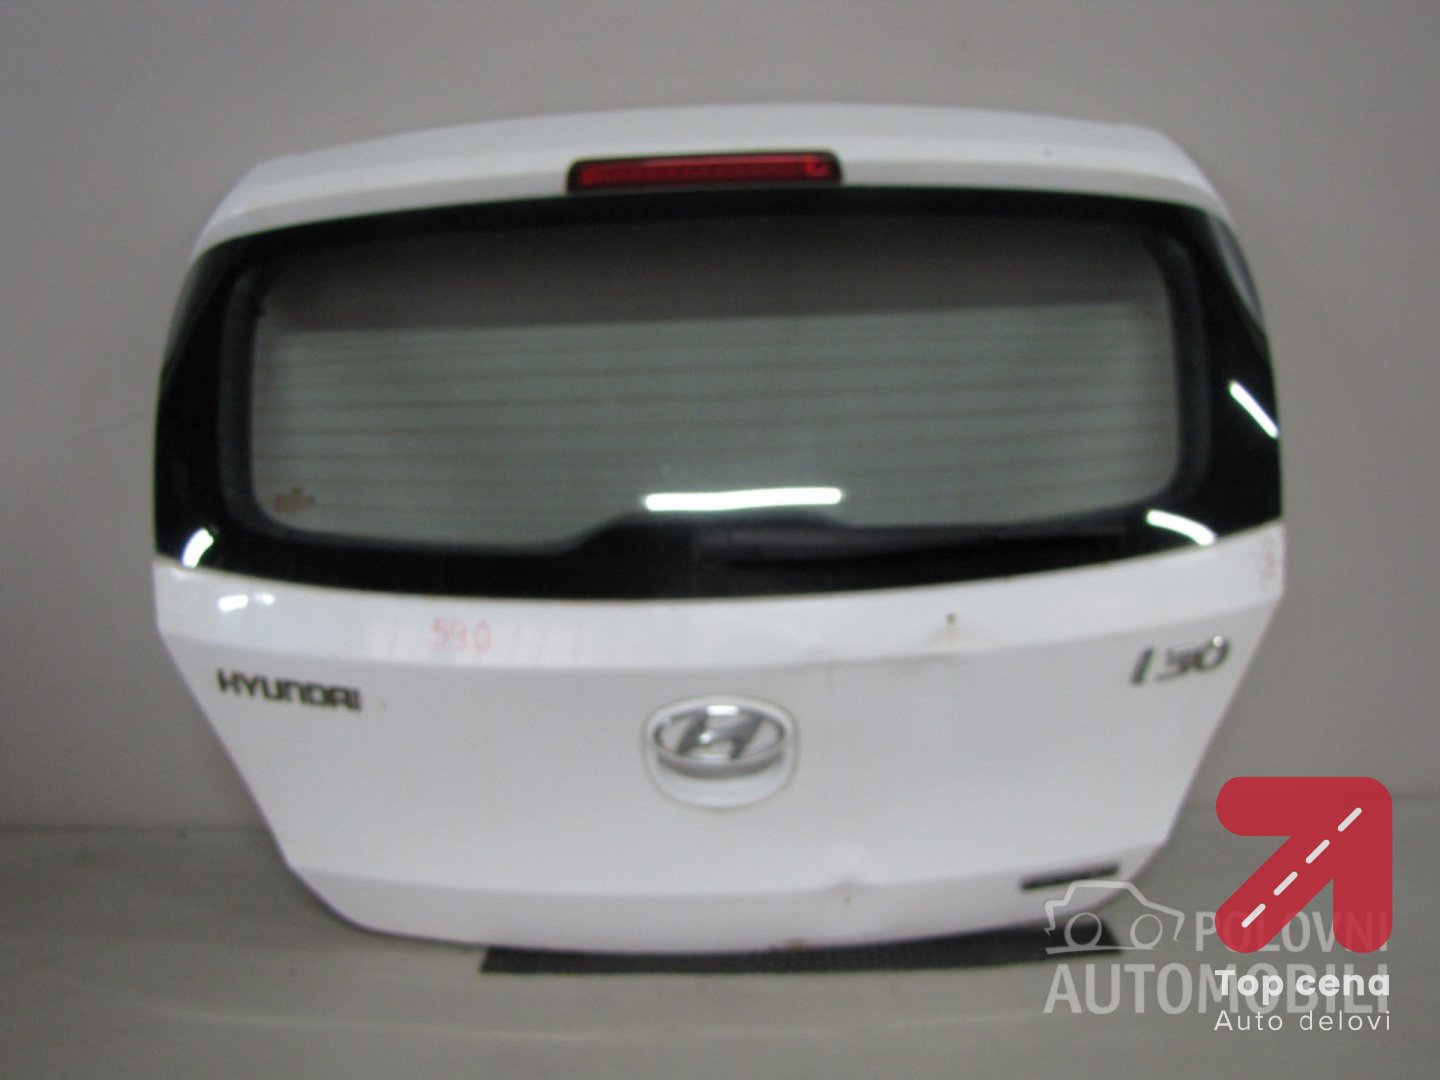 Gepek vrata za Hyundai i30 od 2010. do 2012. god.